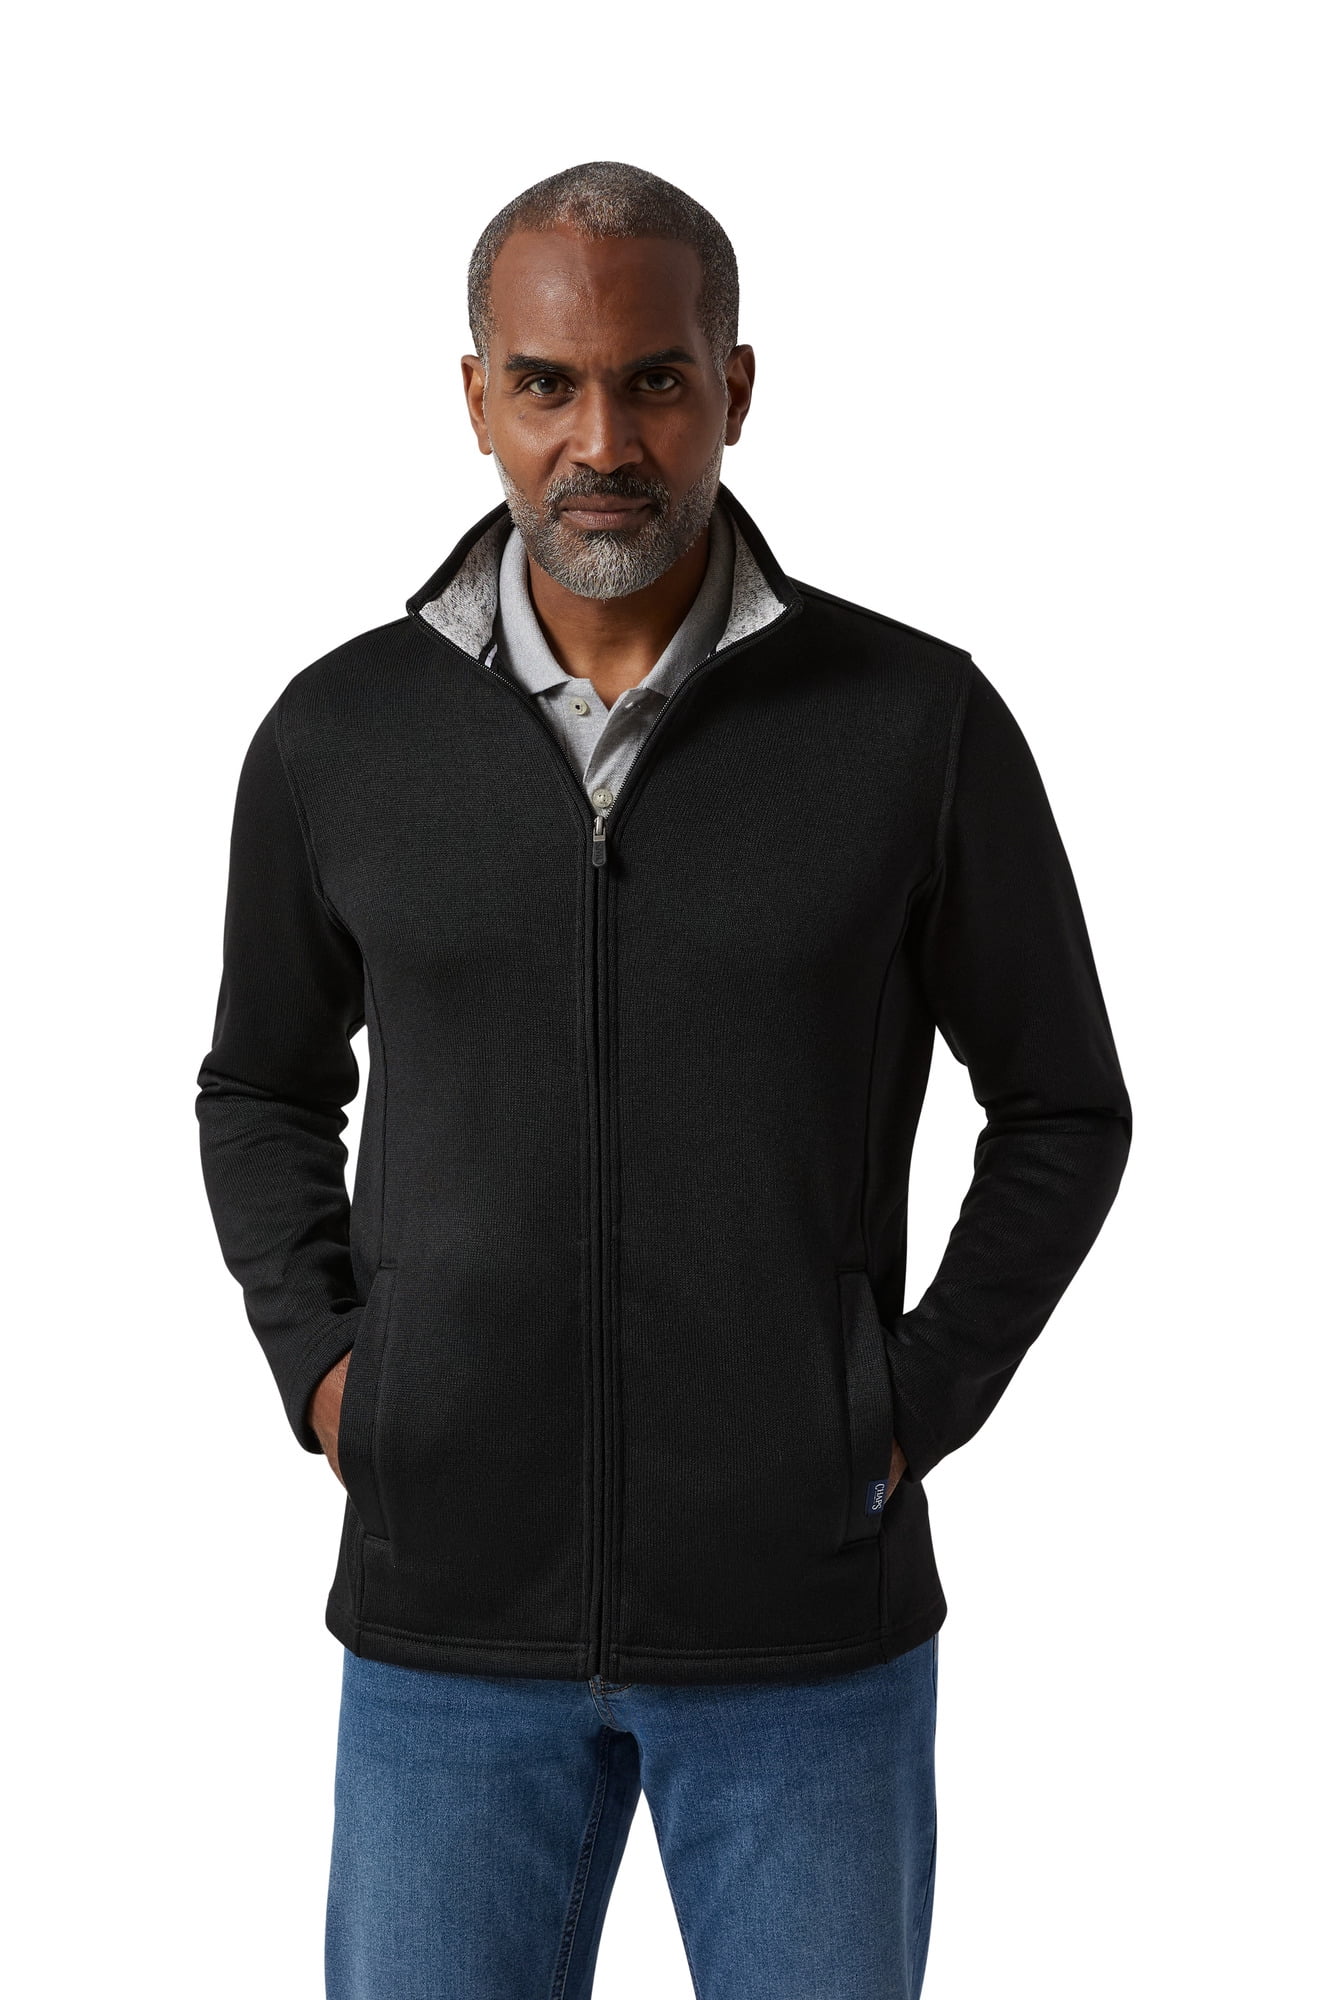 Chaps Men's & Big Men's Full Zip Sweater Fleece - Walmart.com